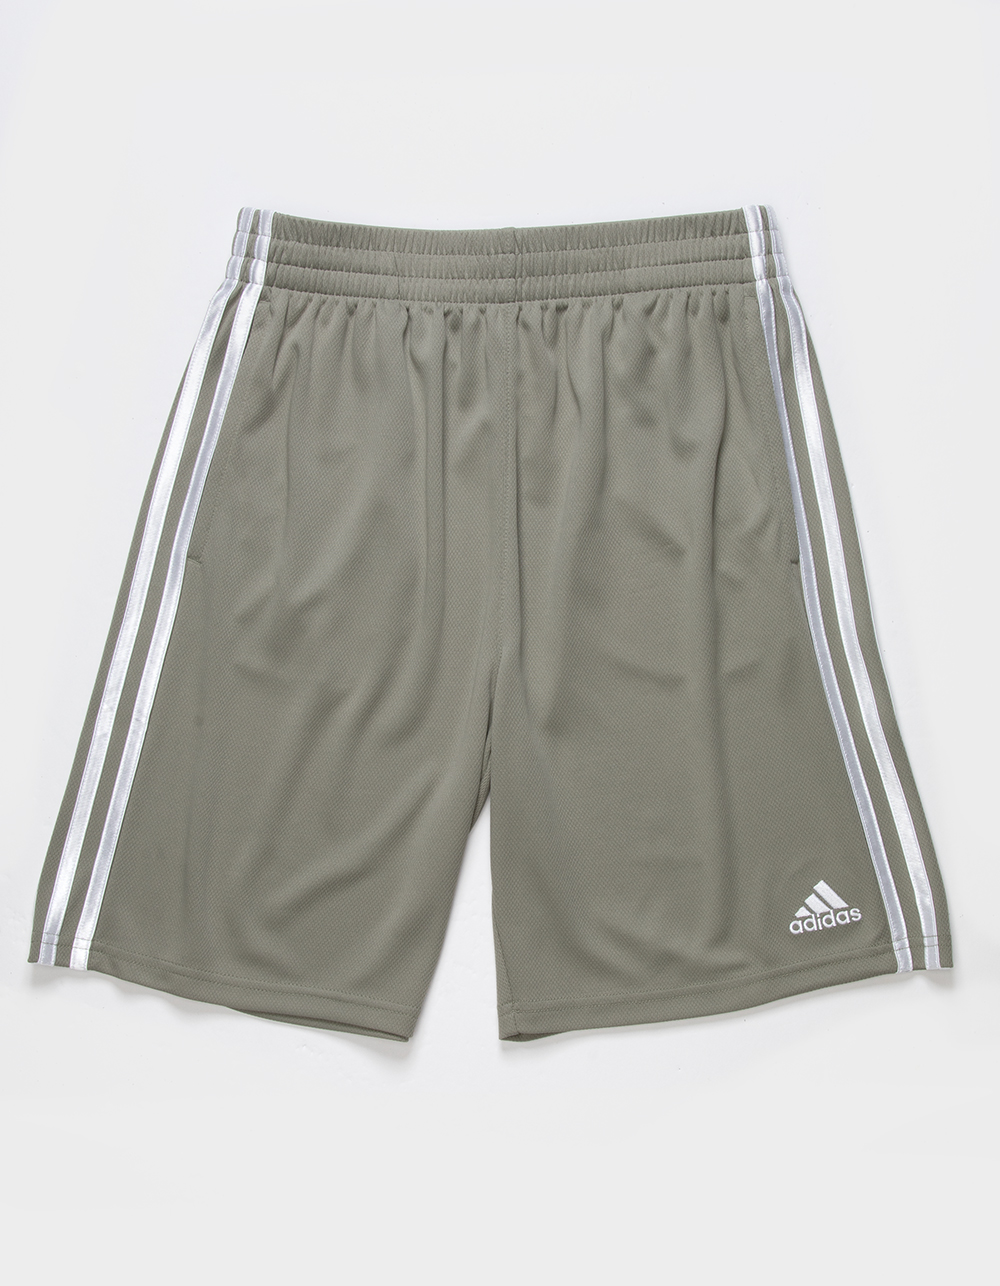 ADIDAS Classic 3-Stripes Boys Mesh Shorts